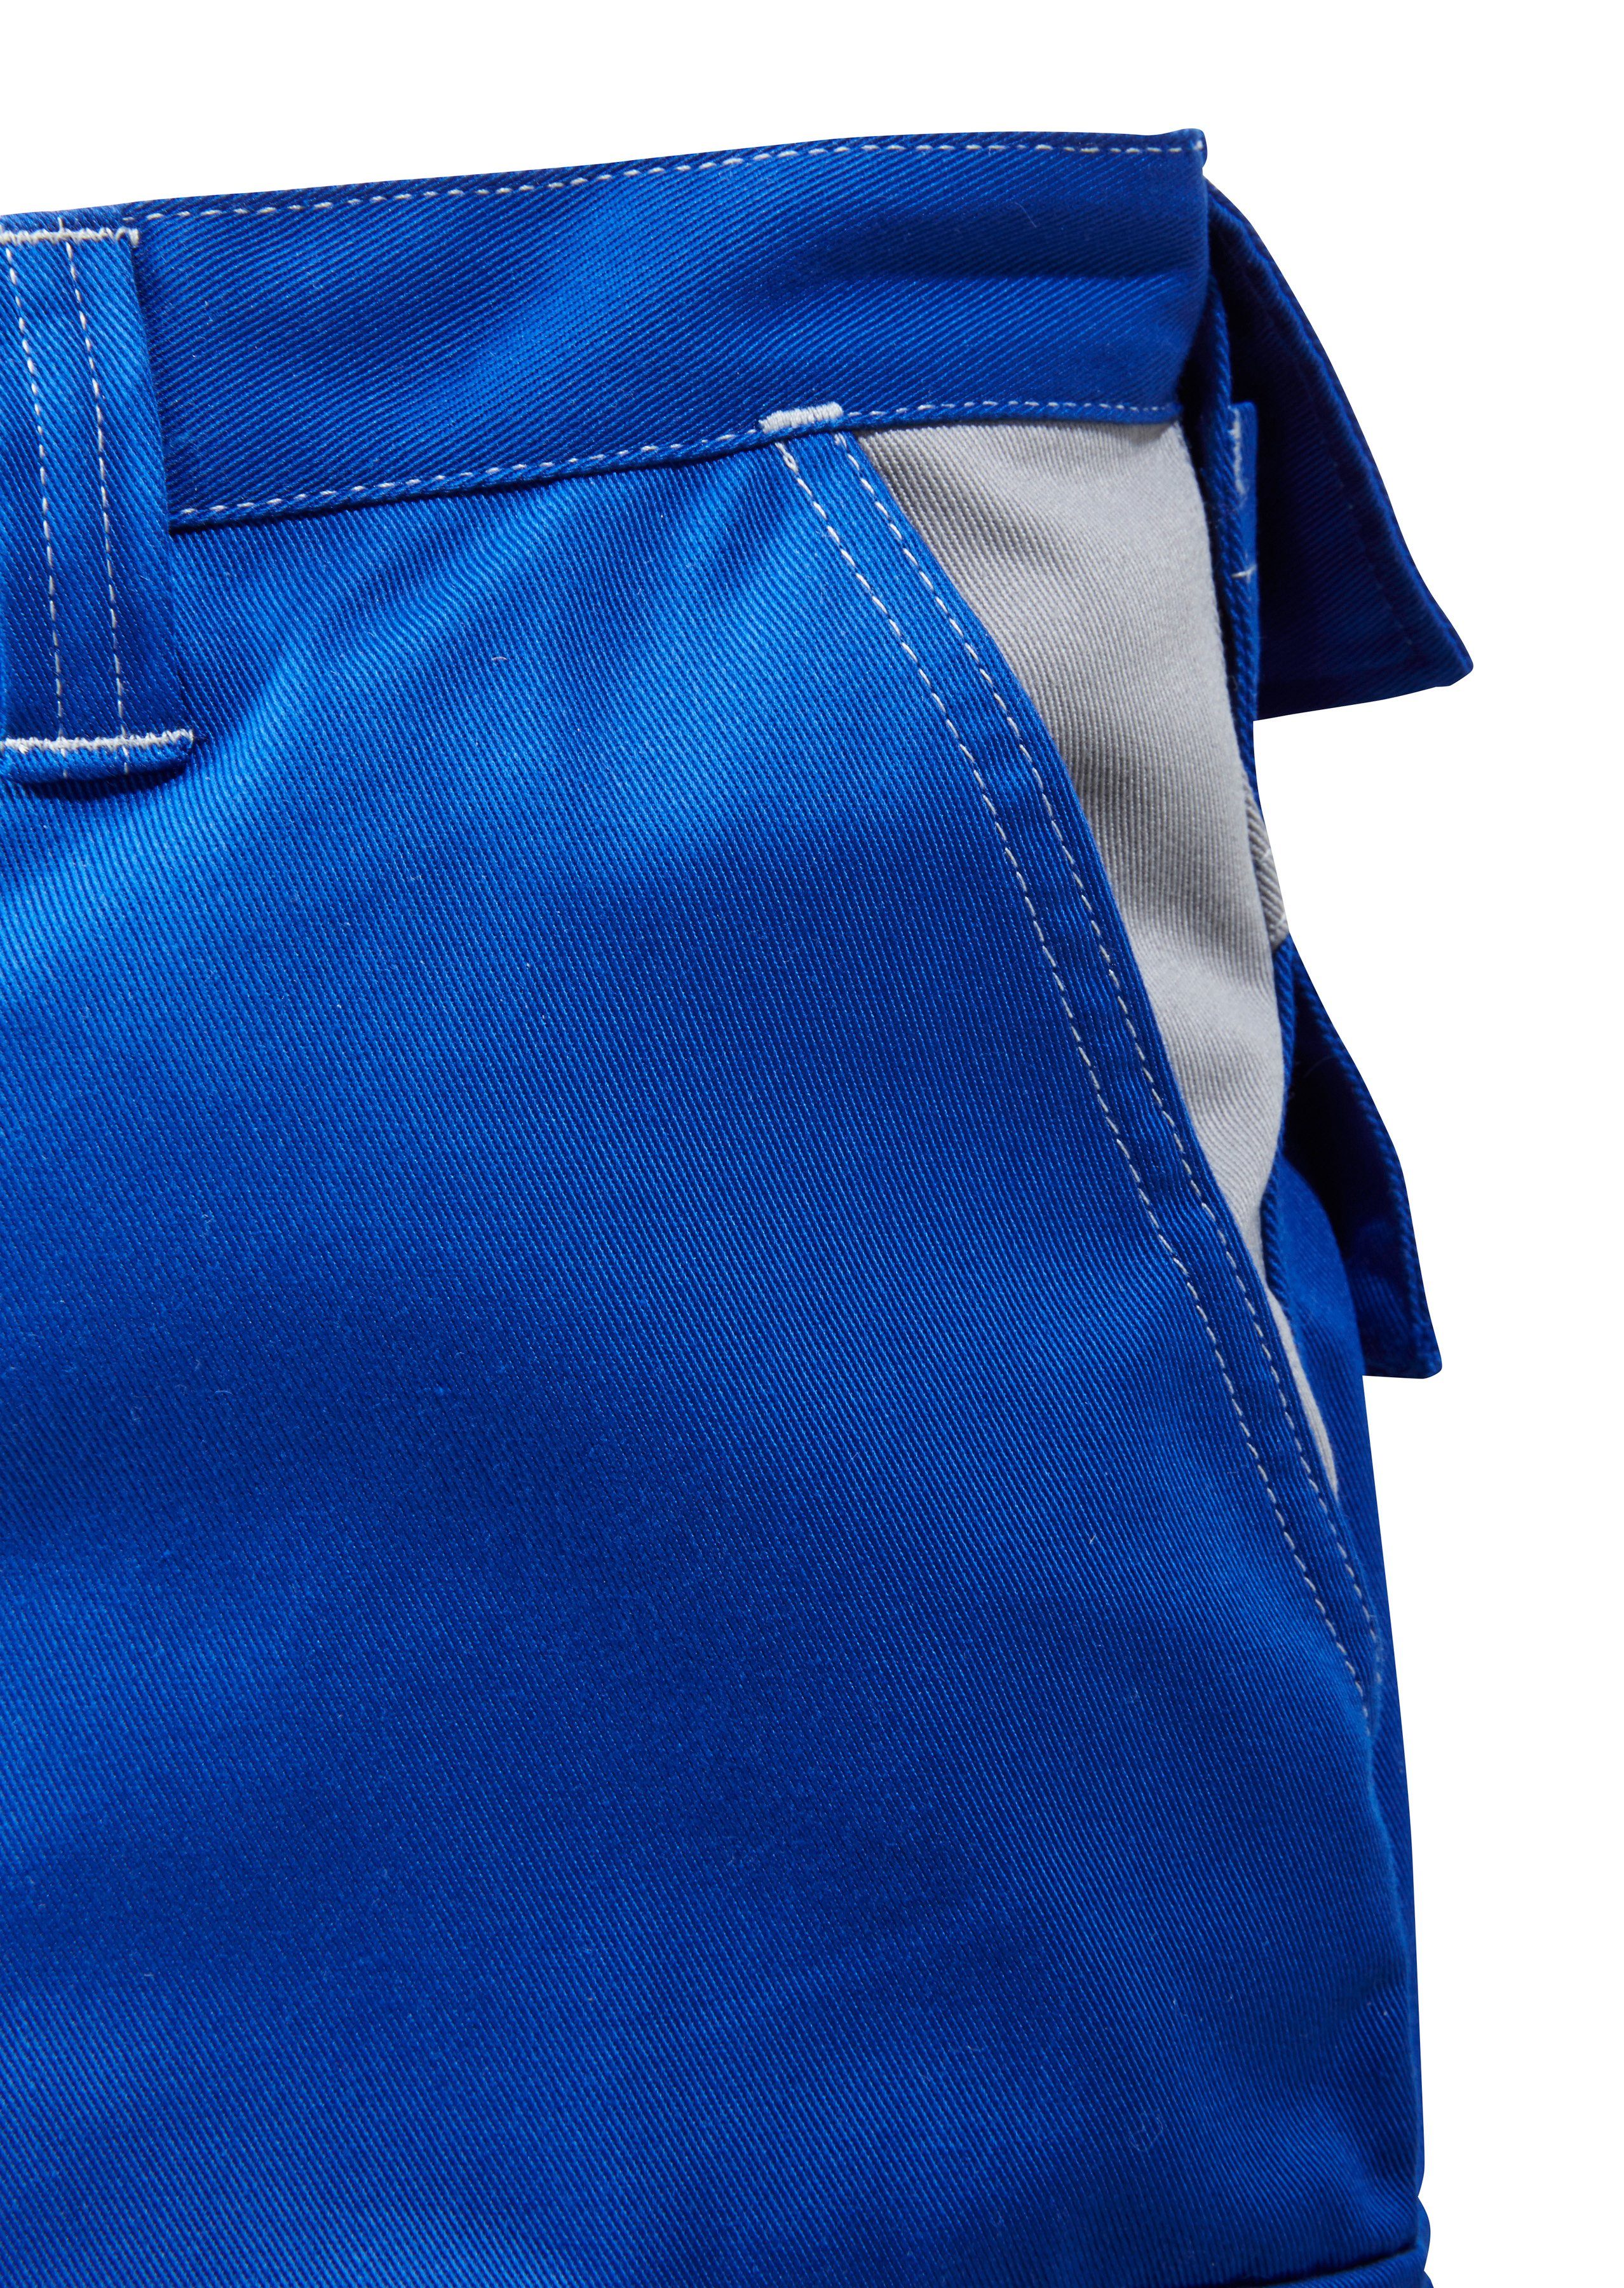 Arbeitshose blau-grau Kübler Kniepolstertaschen mit